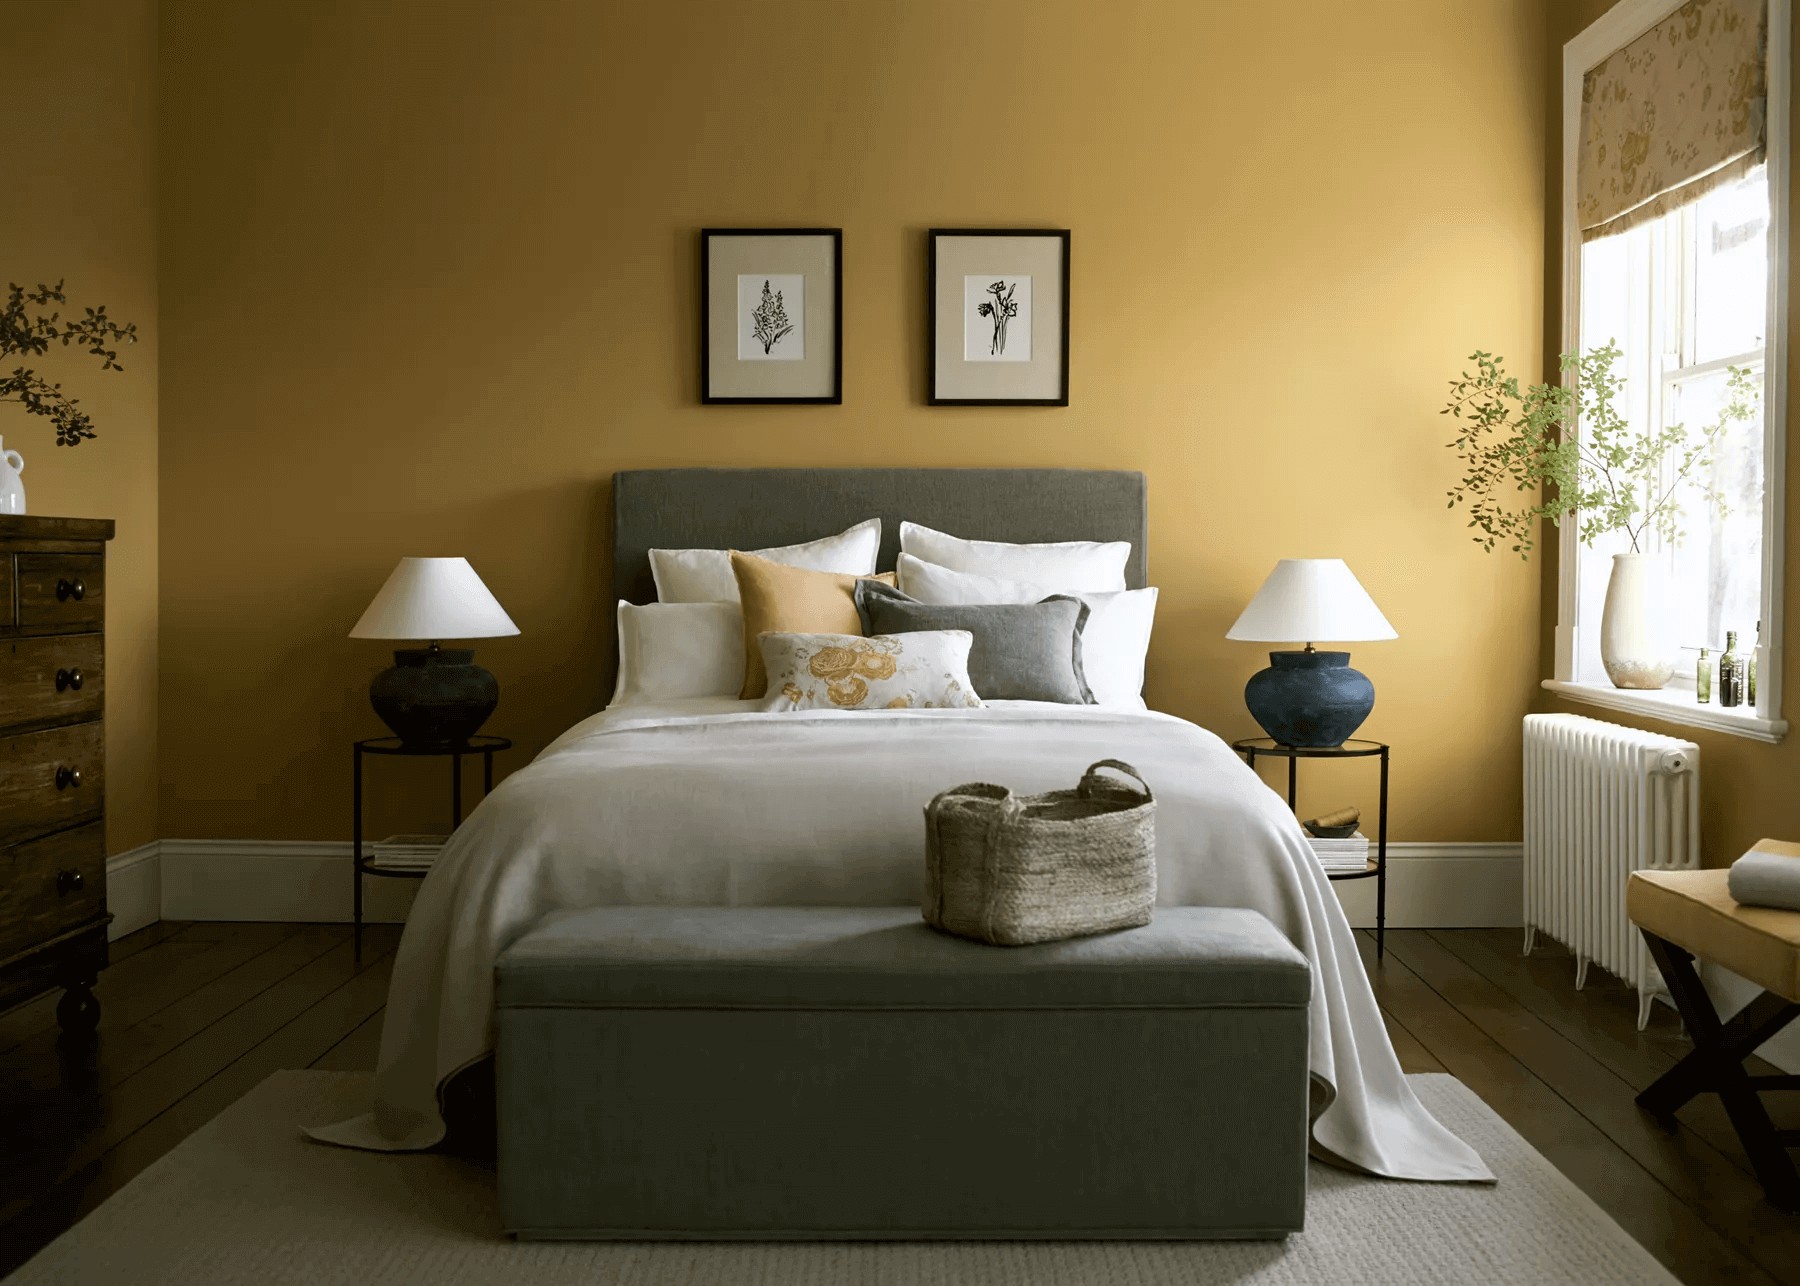 Phòng ngủ màu vàng nâu dễ dùng